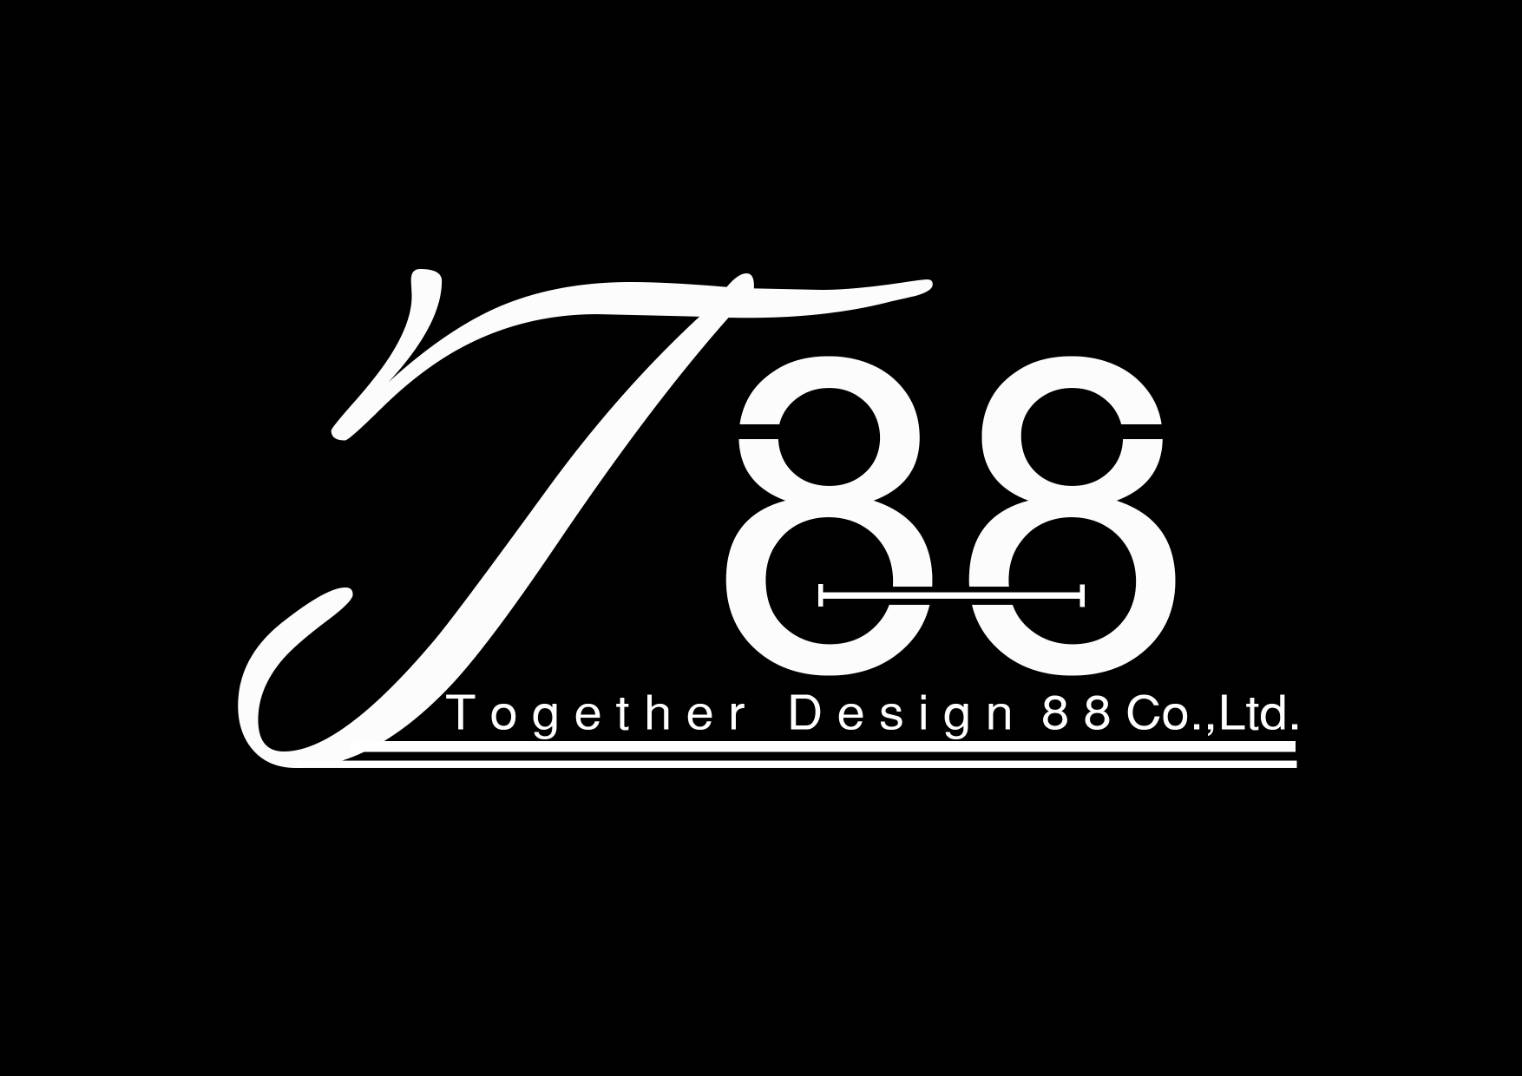 Together Design 88 Co.,Ltd. logo โลโก้